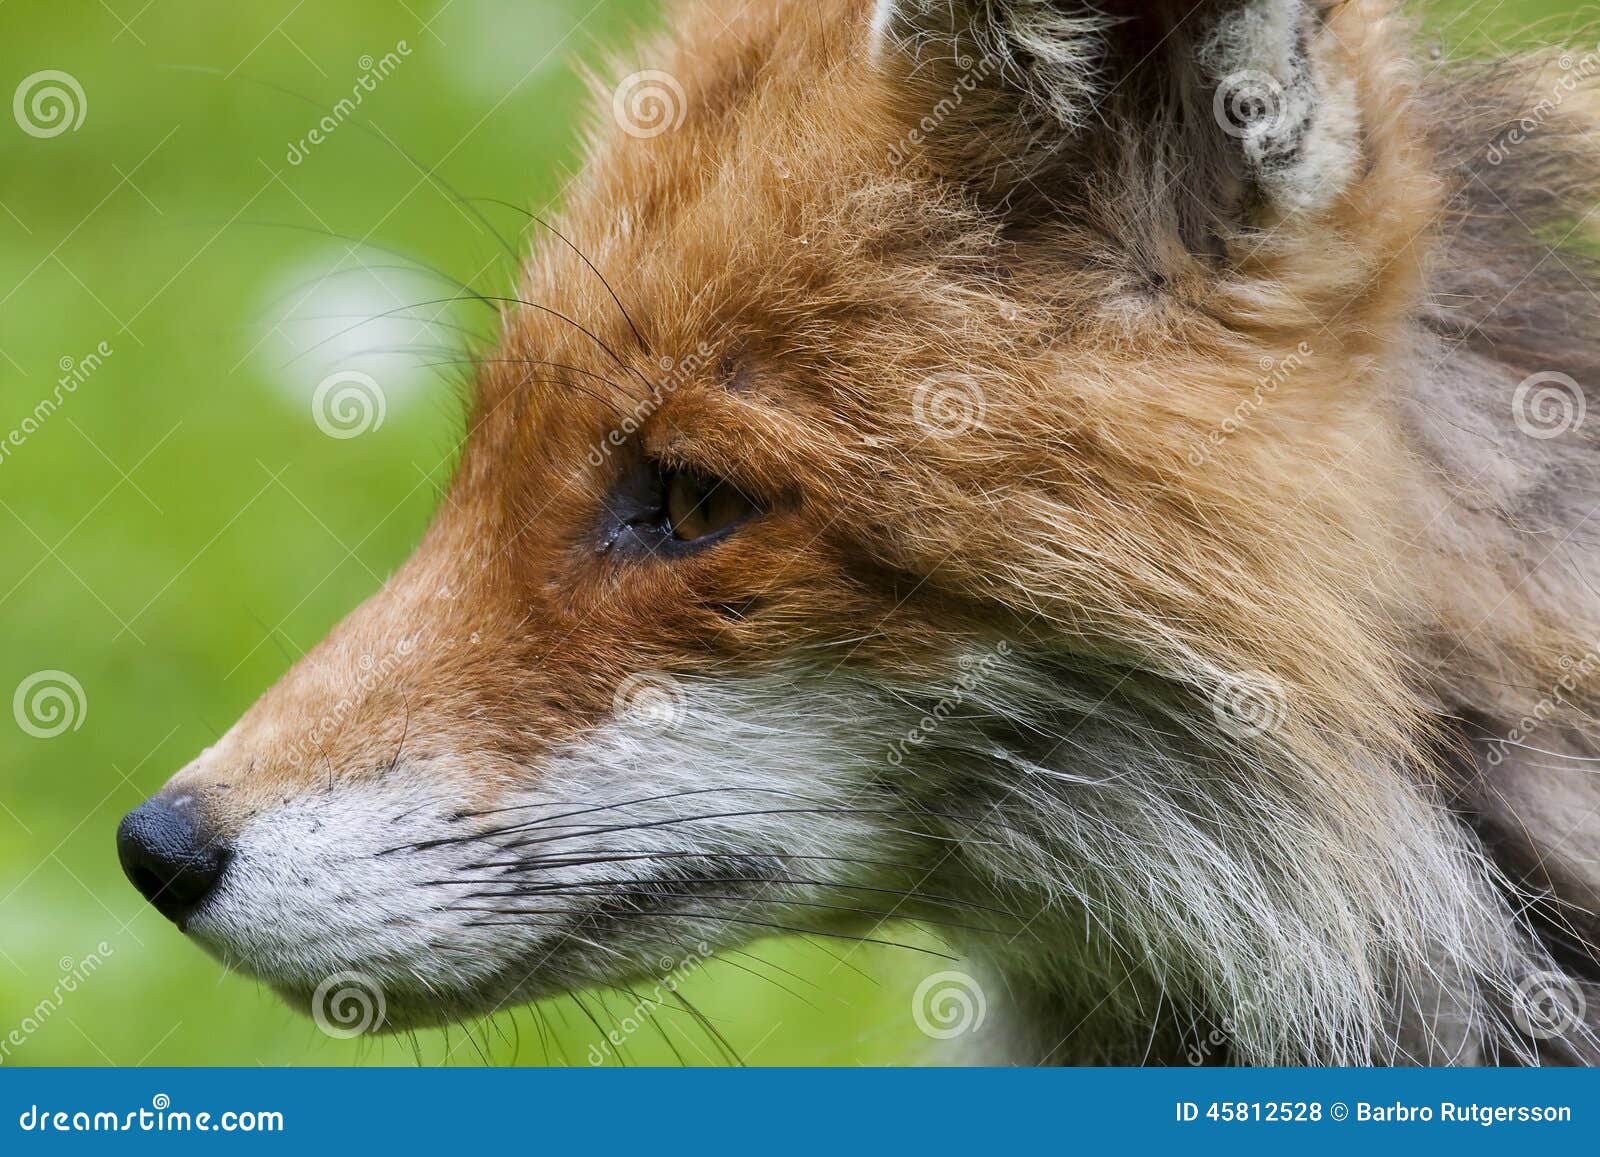 Picture fox profile Megan Fox